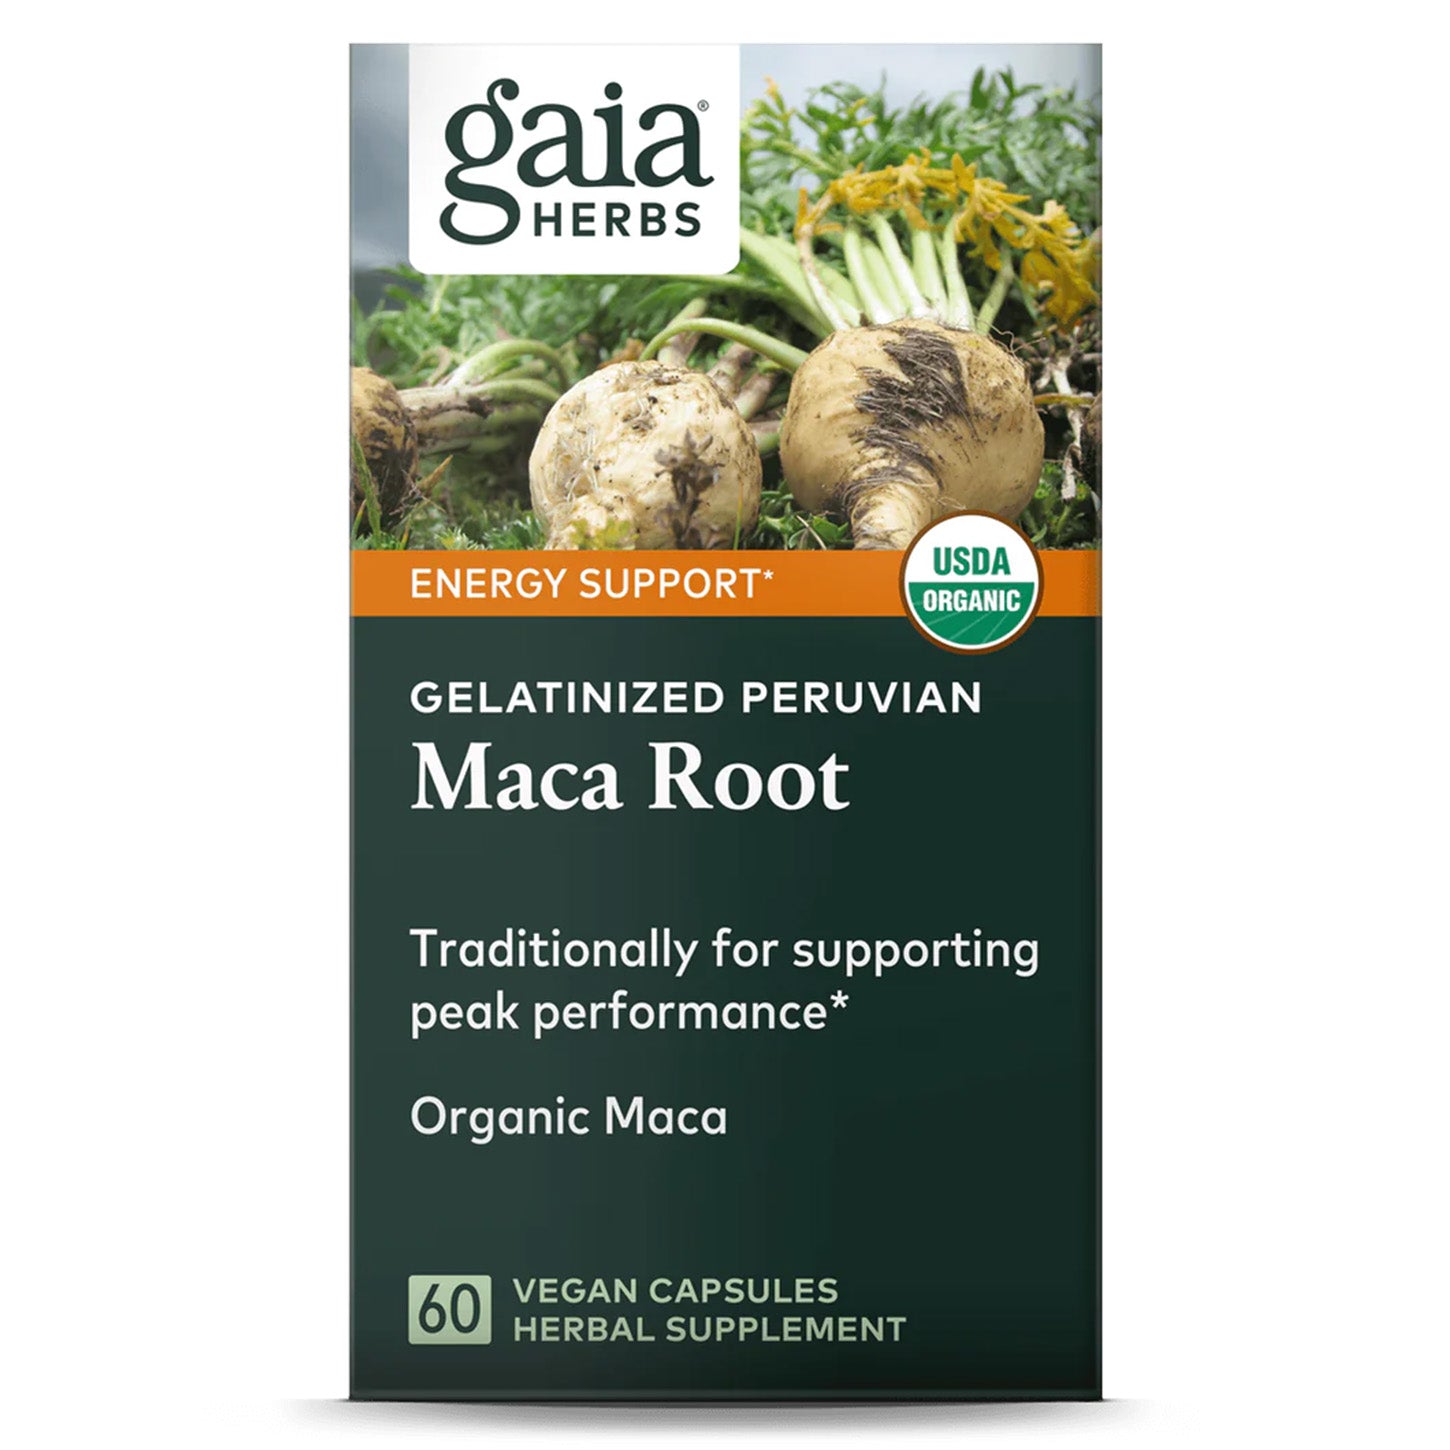 Raíz de Maca Gaia Herbs: Energía y Vitalidad Natural | ProHealth Shop [Panamá]